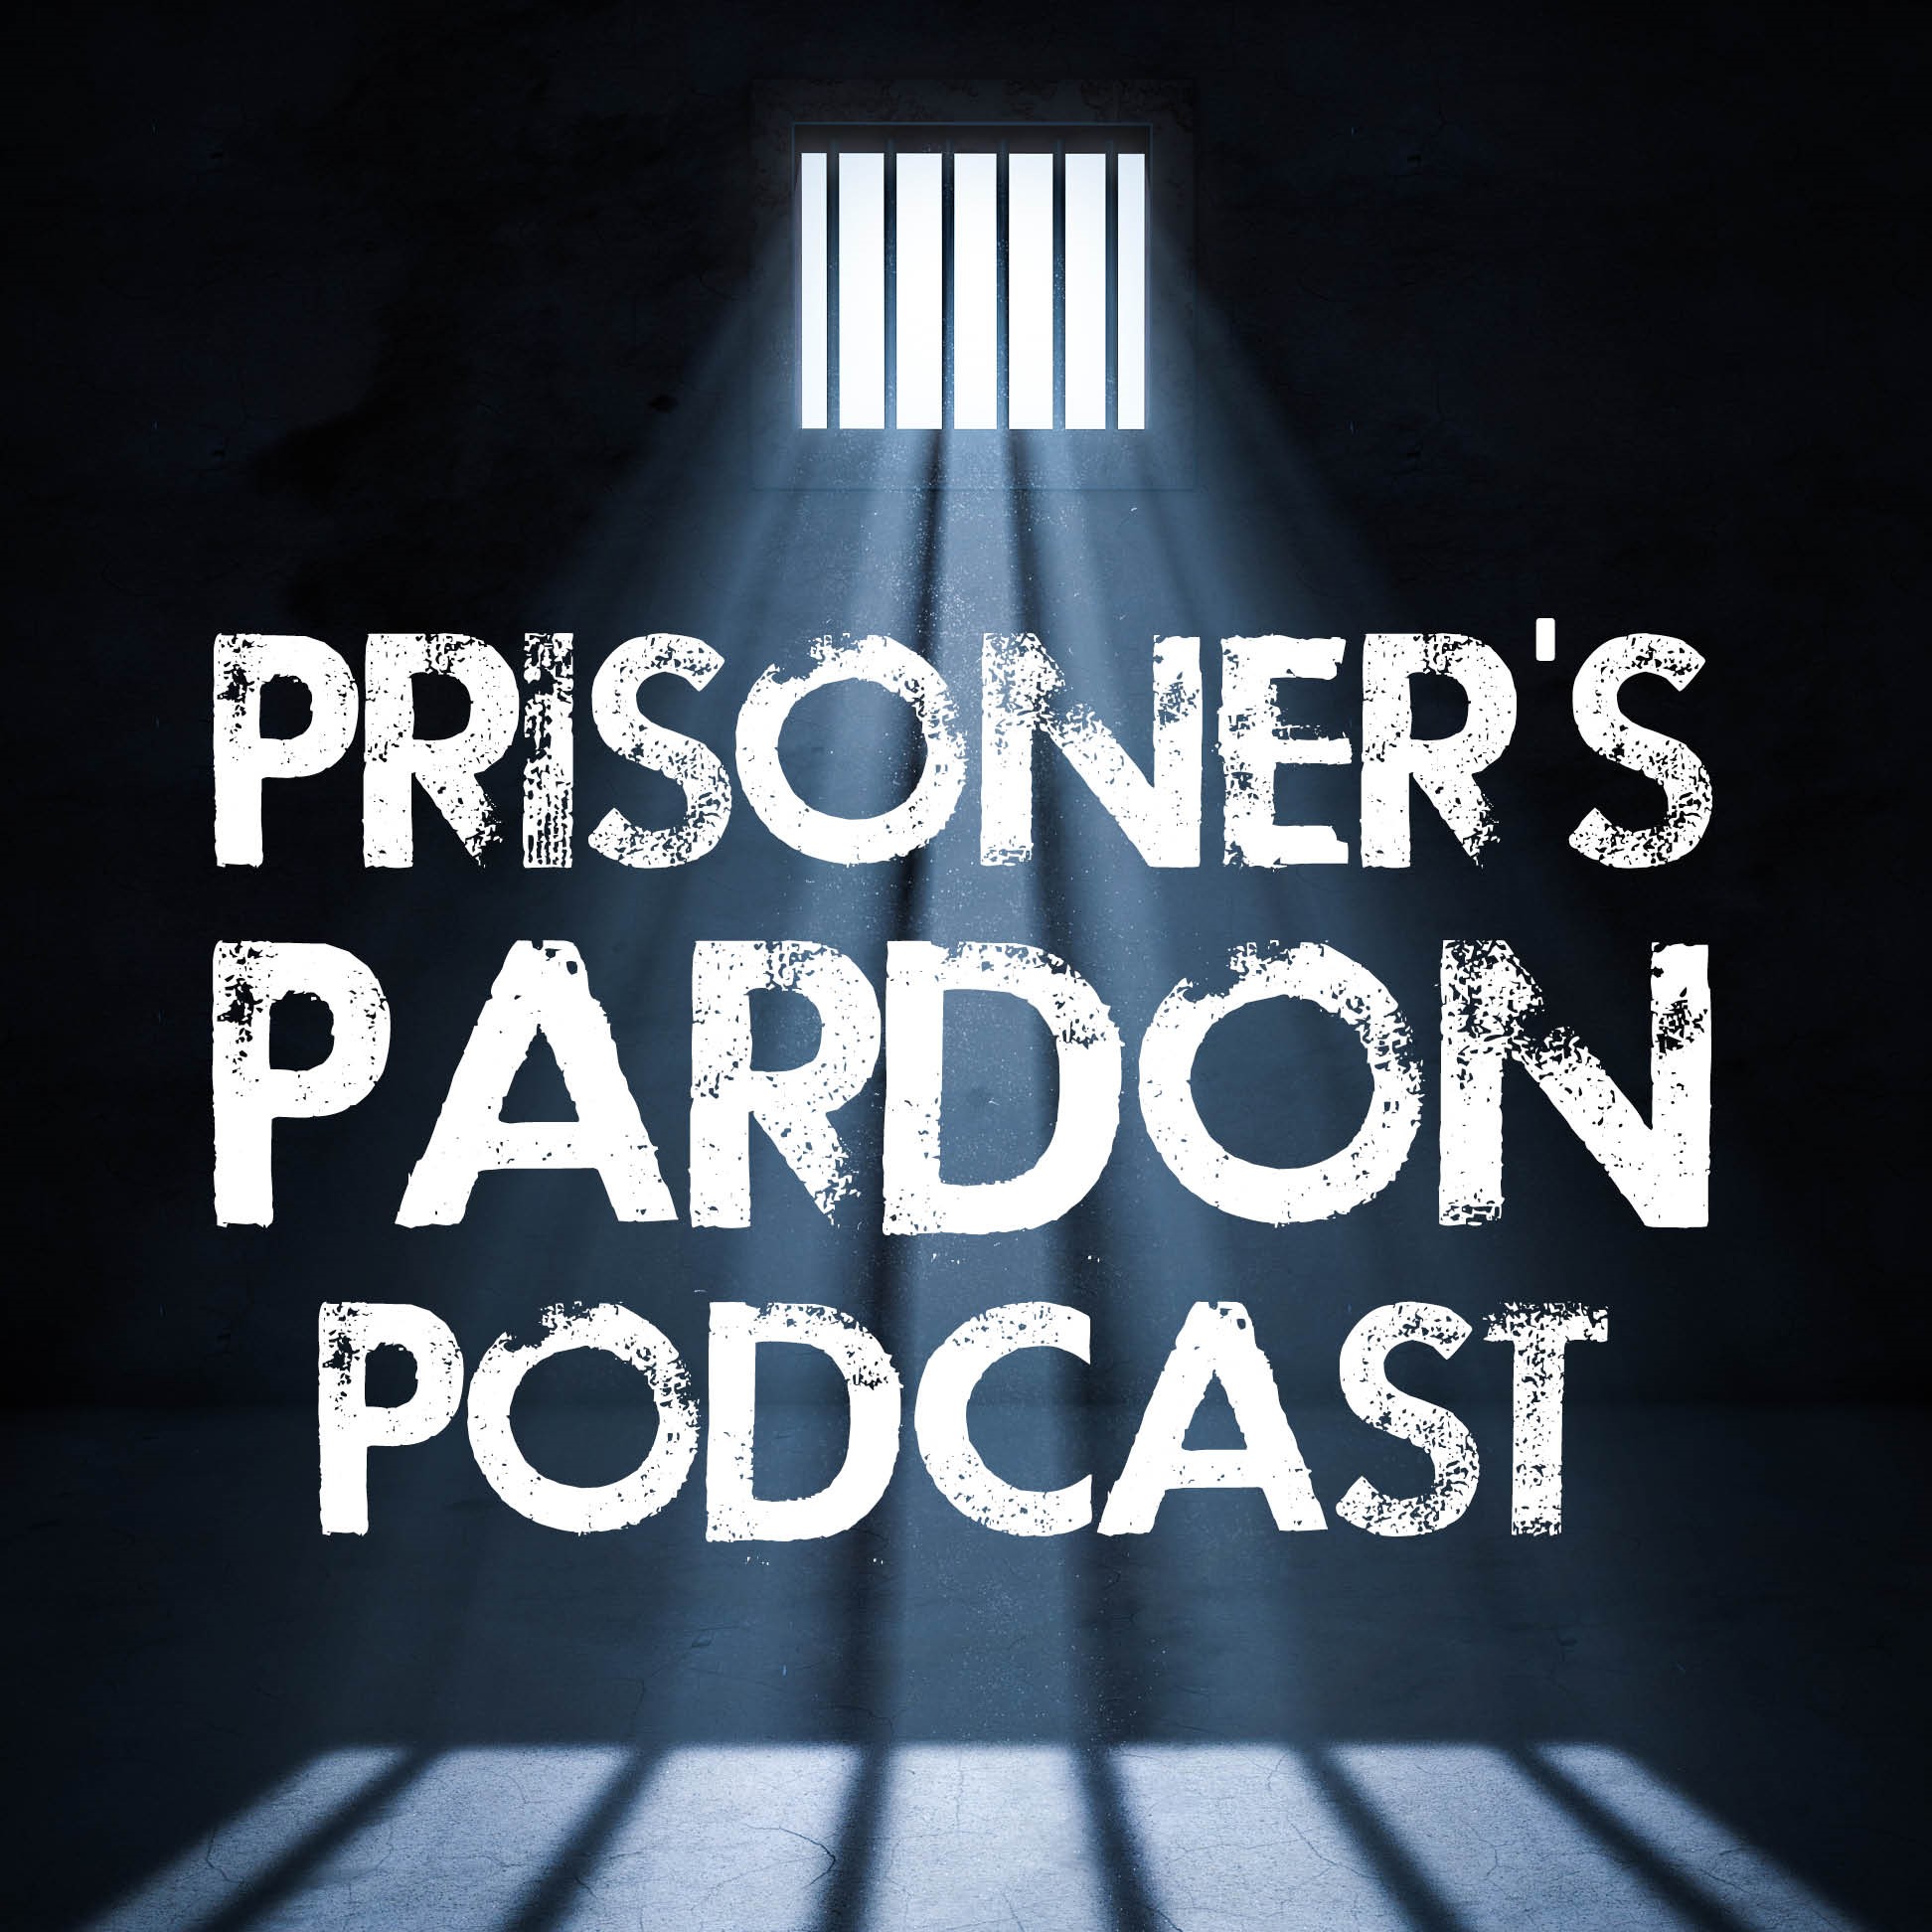 Artwork for podcast Prisoner's Pardon